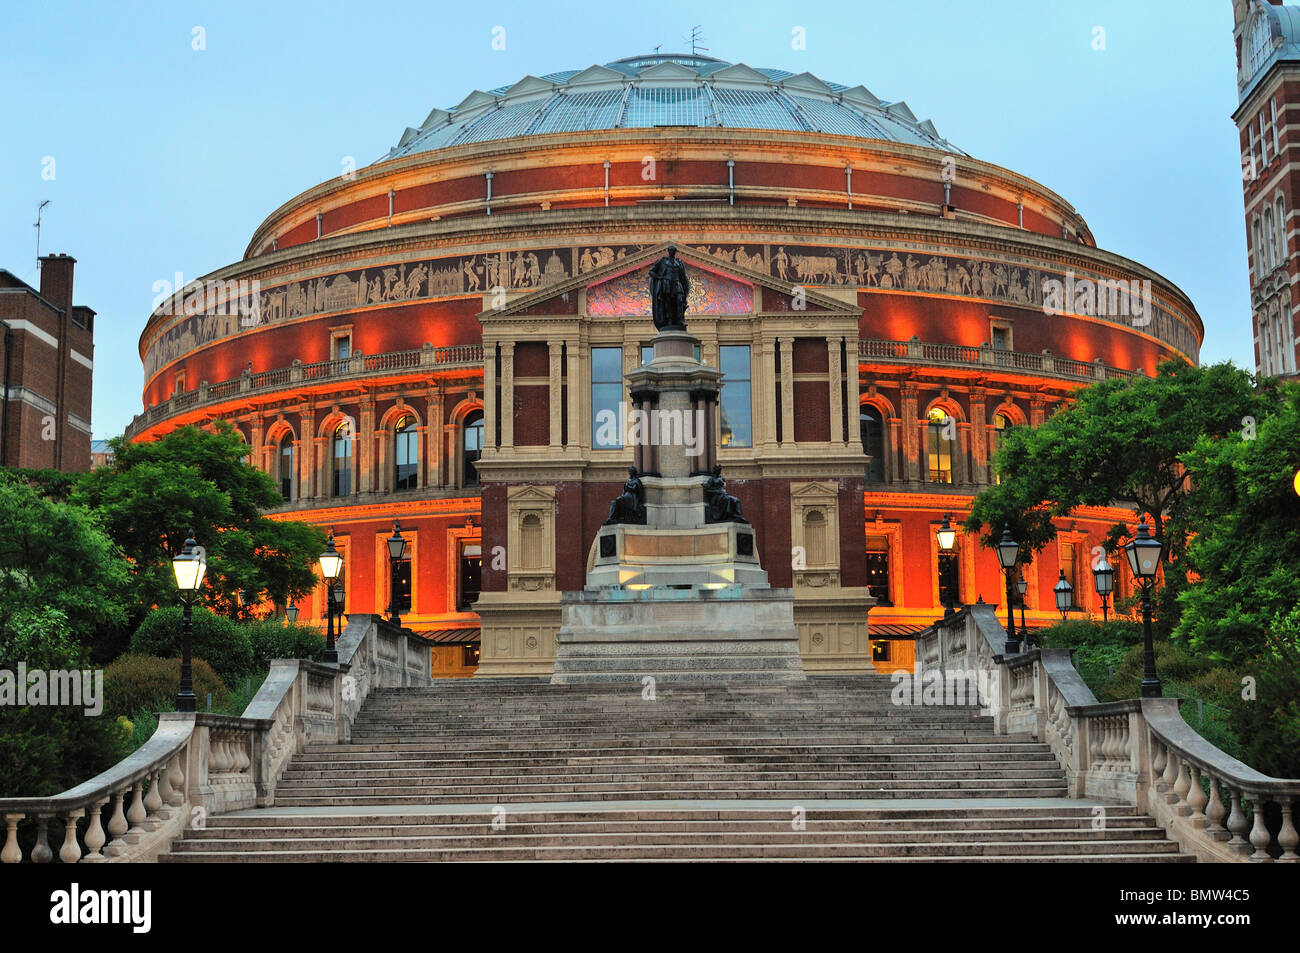 Royal Albert Hall di notte Foto Stock